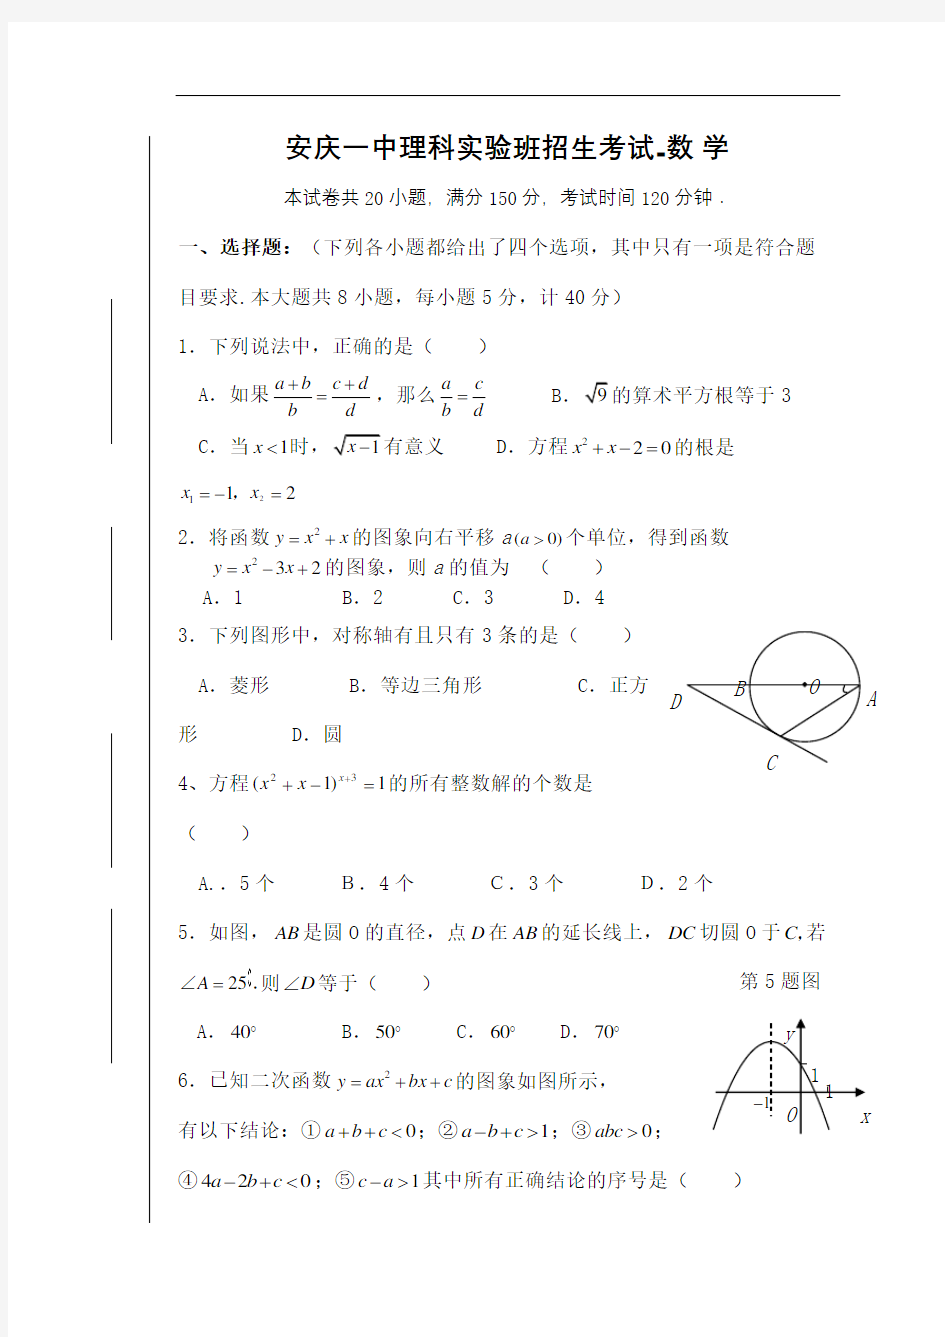 安庆一中理科实验班招生考试数学